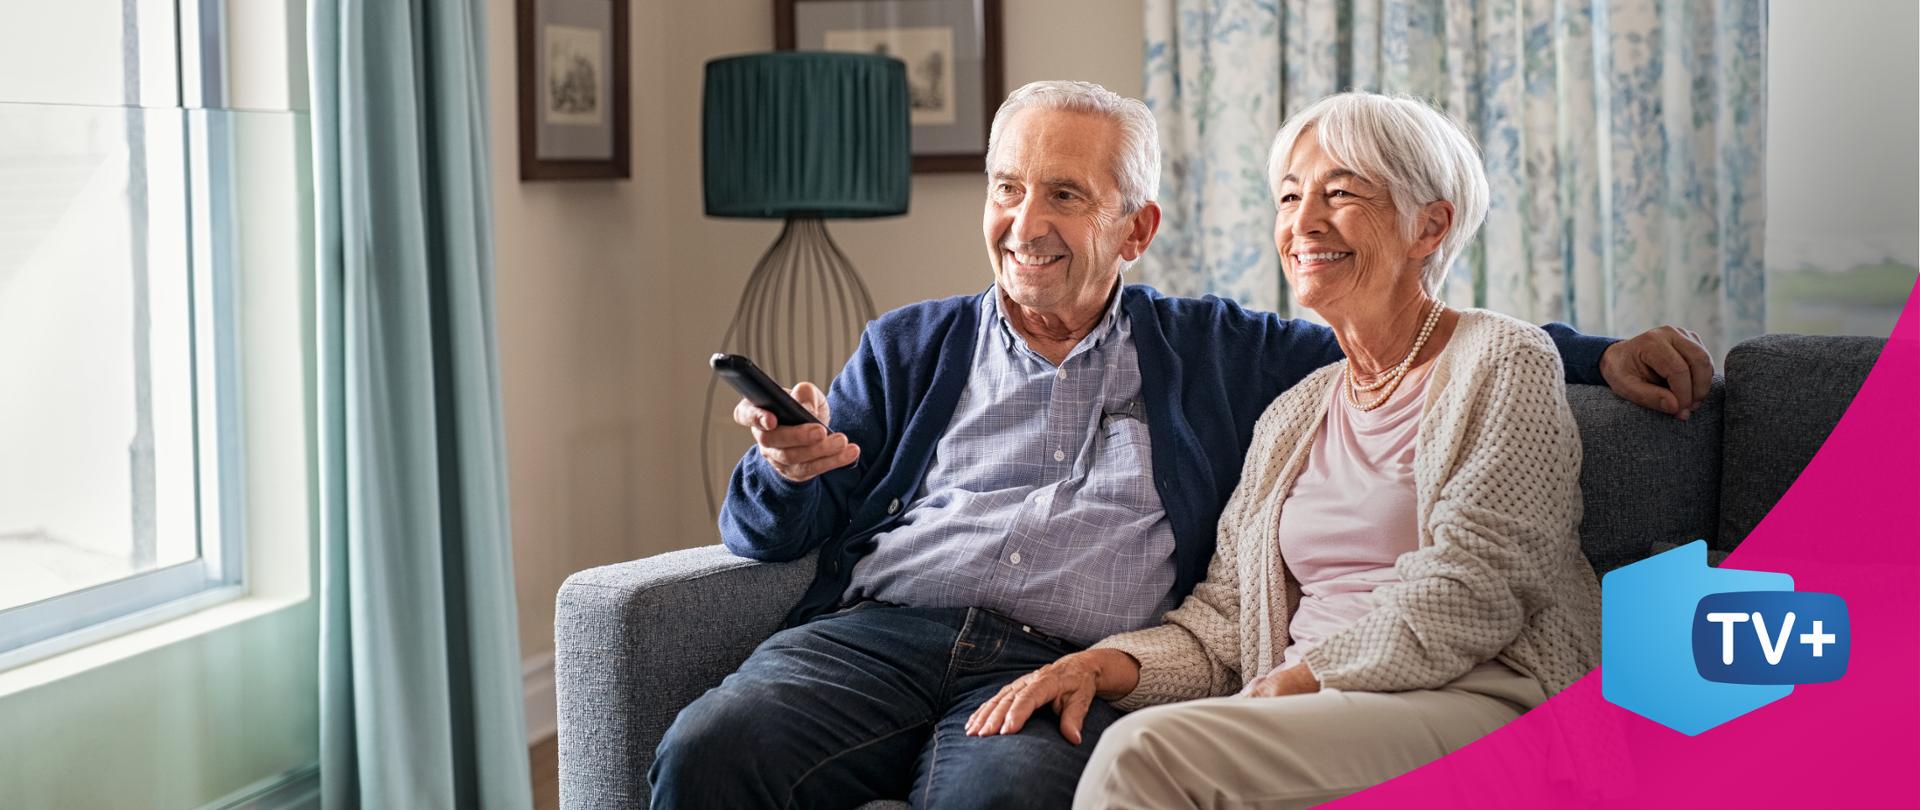 zdjęcie przedstawiające parę starszych ludzi siedzących na kanapie, uśmiechają się. Mężczyzna trzyma pilota do telewizora w ręku.